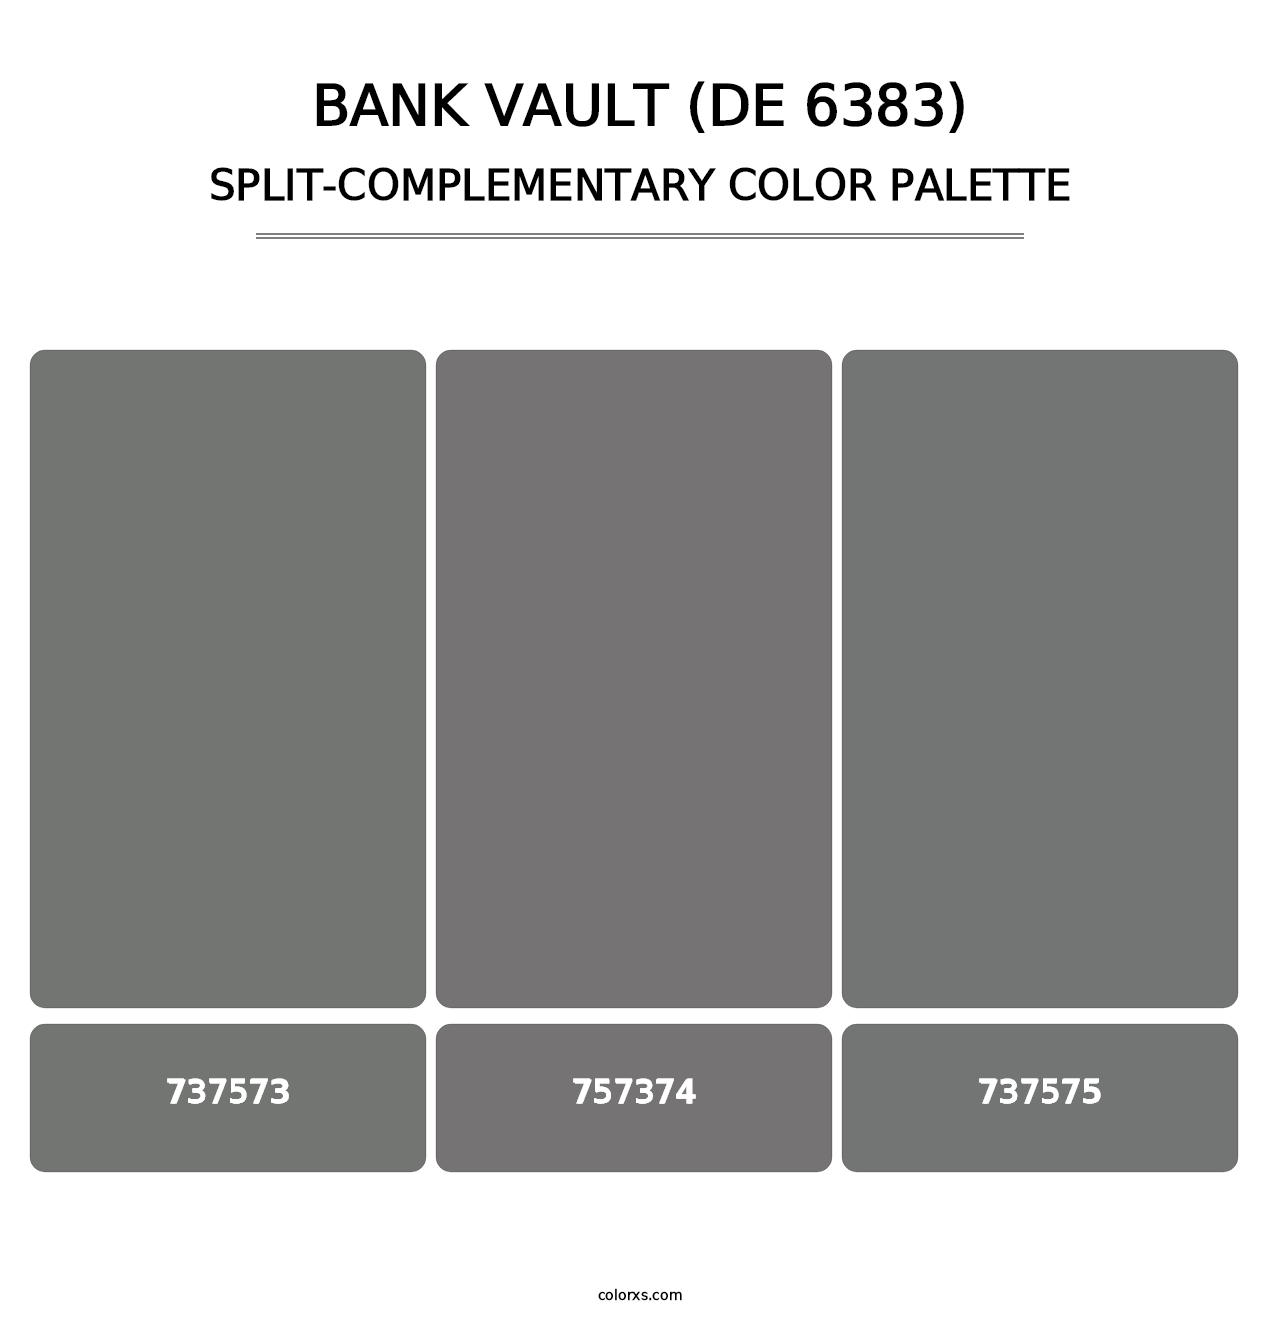 Bank Vault (DE 6383) - Split-Complementary Color Palette